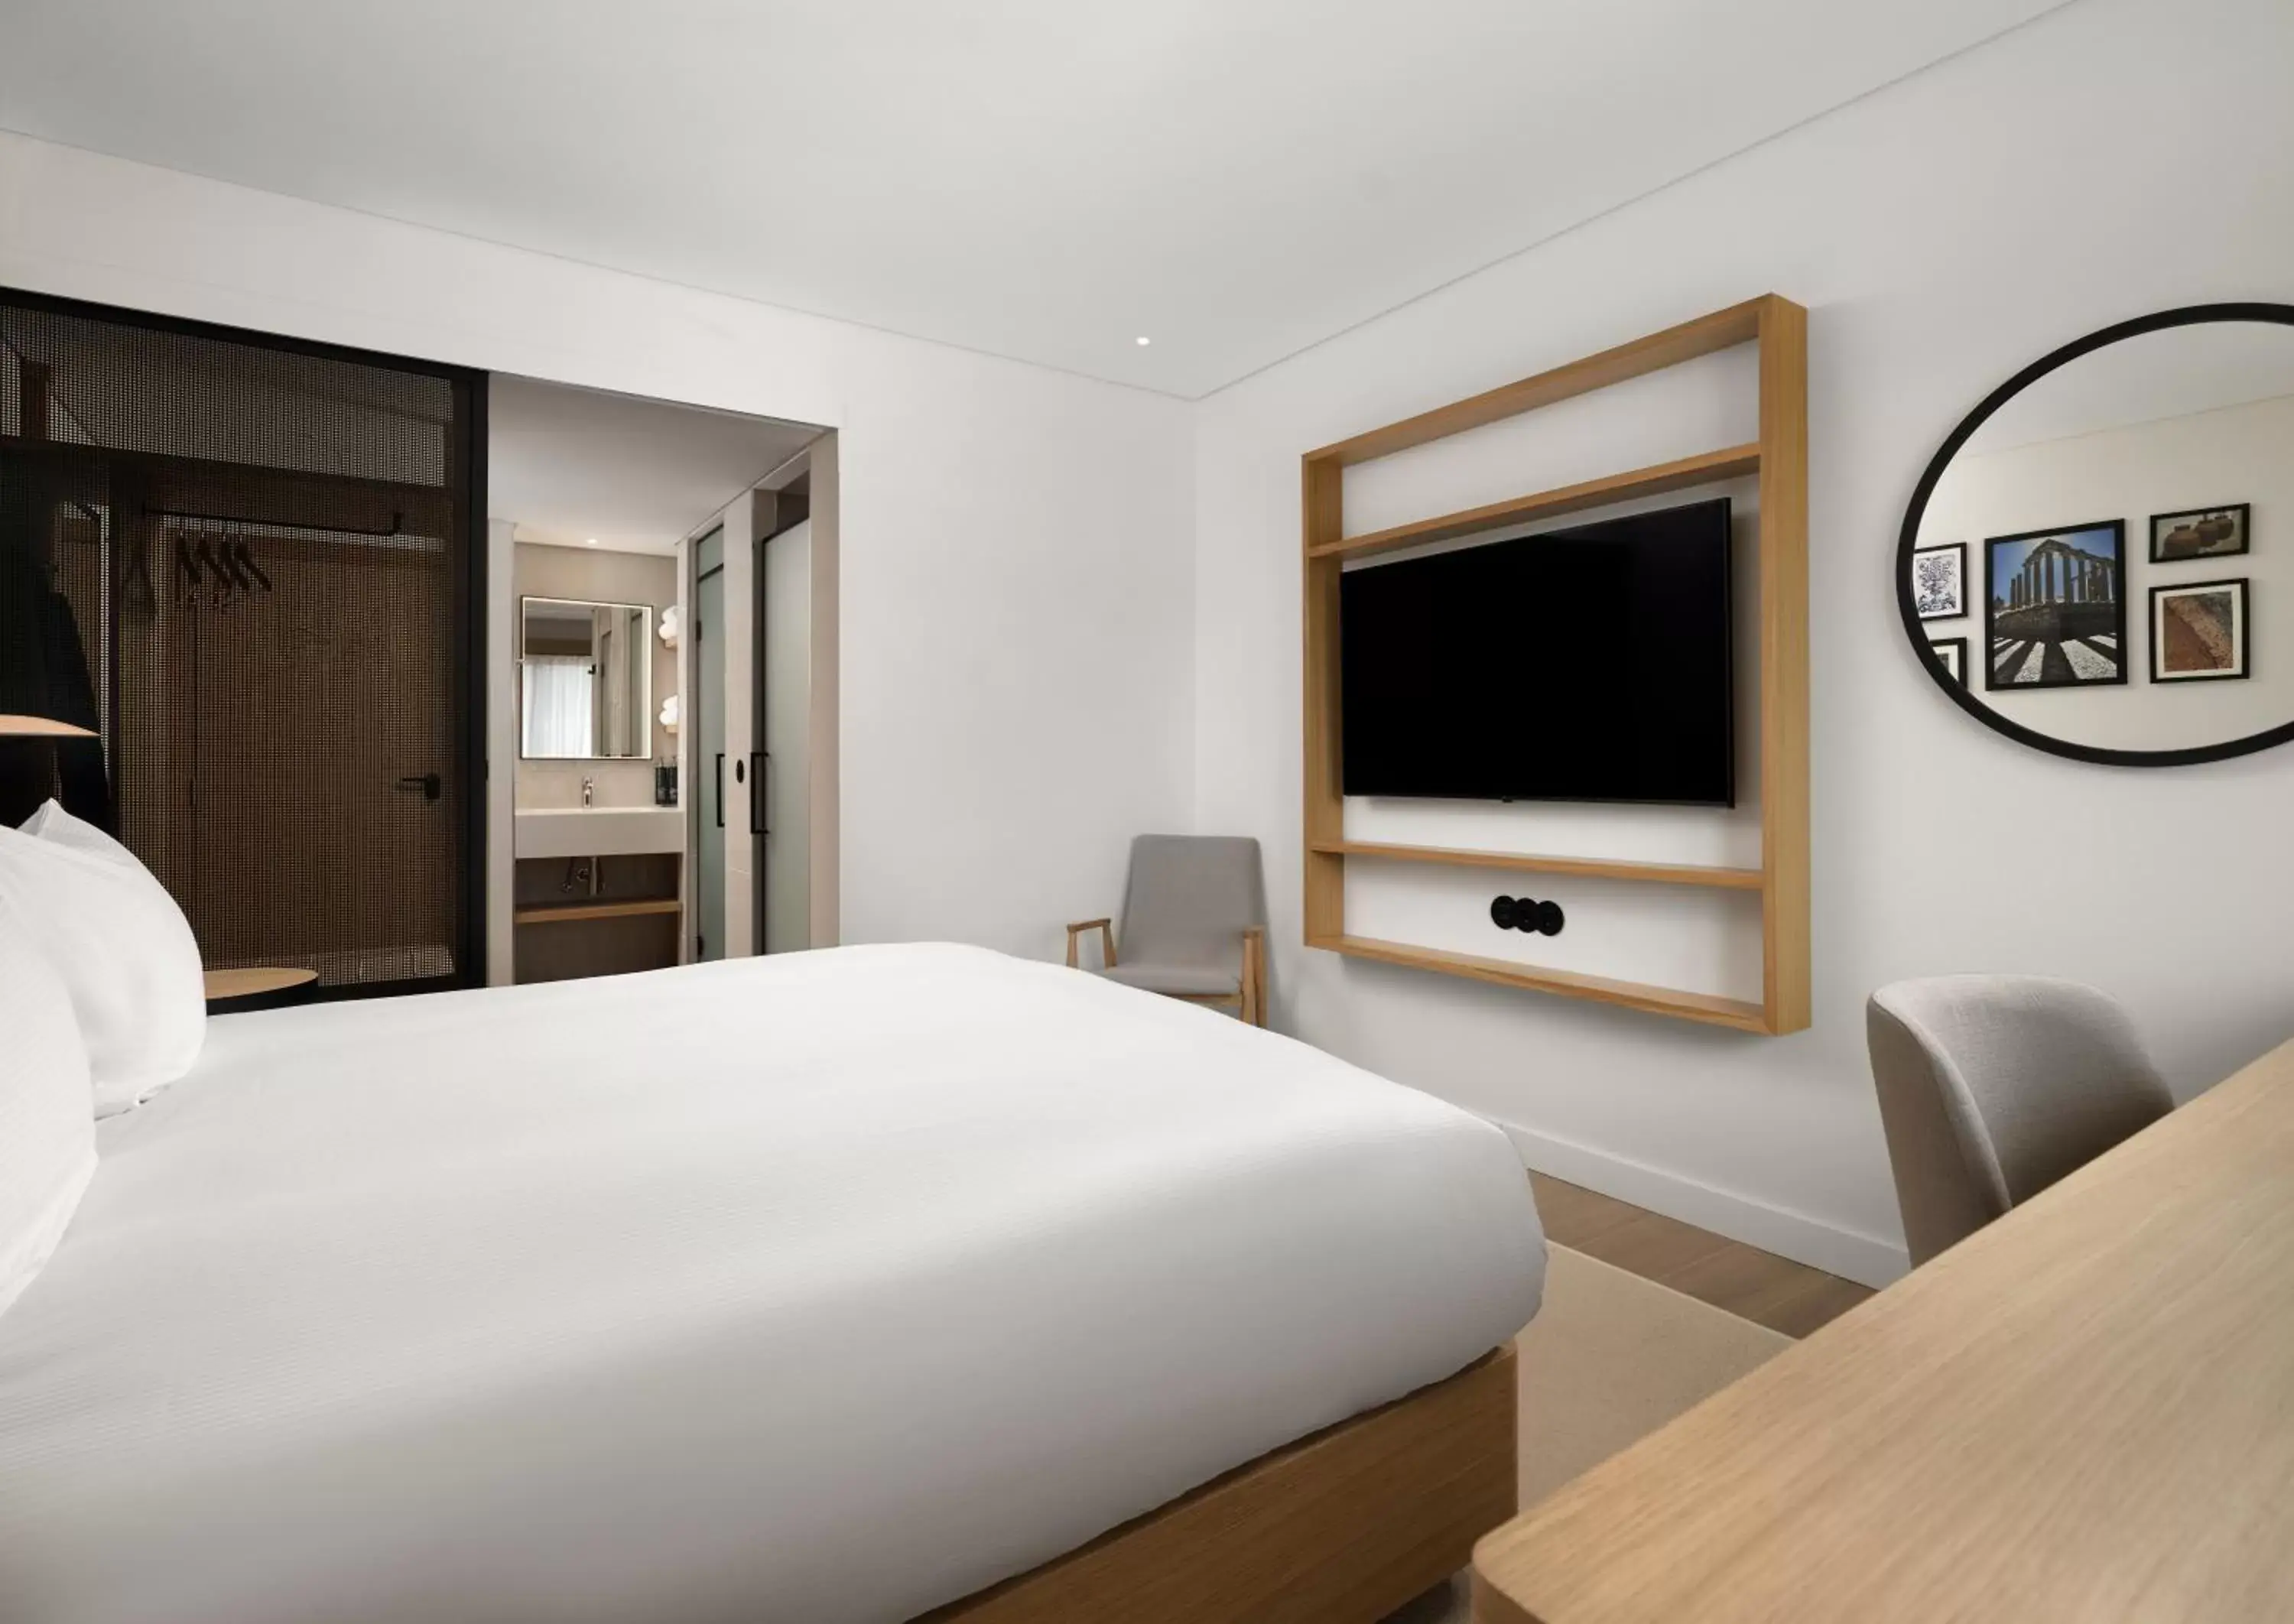 Bedroom, TV/Entertainment Center in Hilton Garden Inn Evora